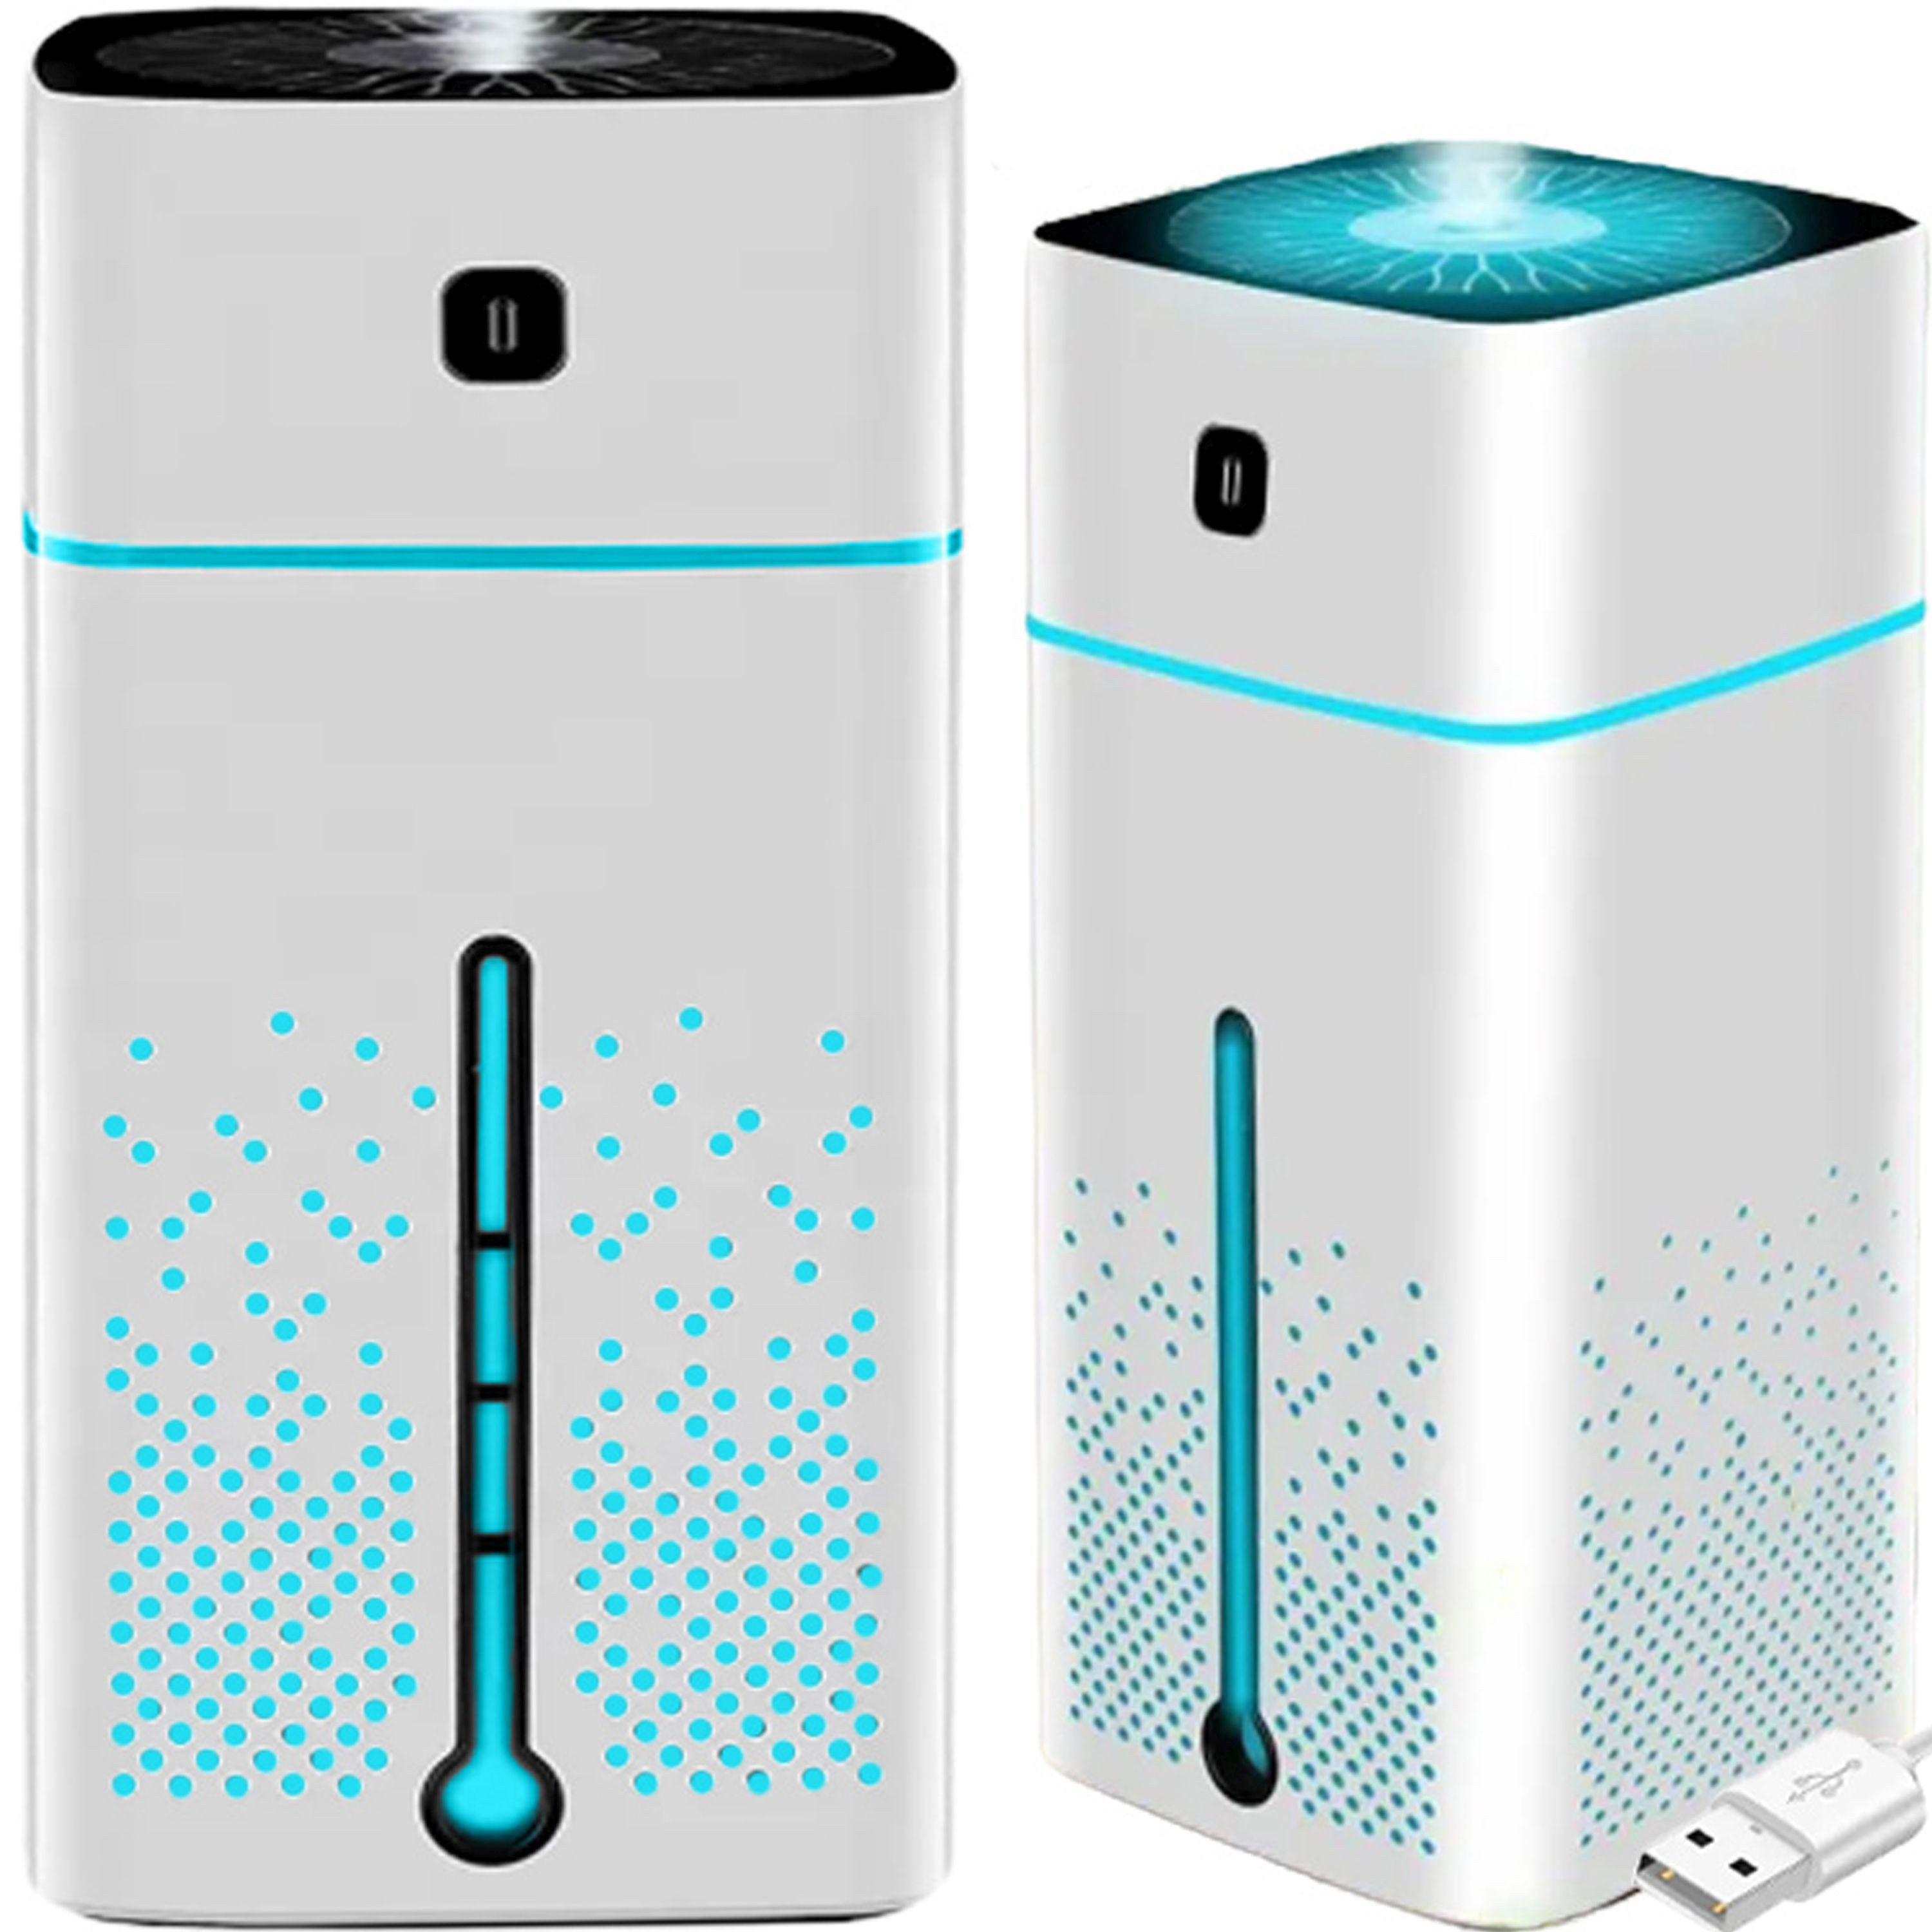 Retoo Luftbefeuchter USB Ultraschall Luftbefeuchter Duftöl Humidifier Aroma Diffuser 1L, 1,00 l Wassertank, Extrem leise im Betrieb, Funktion Nachttischlampe und Aromatherapie